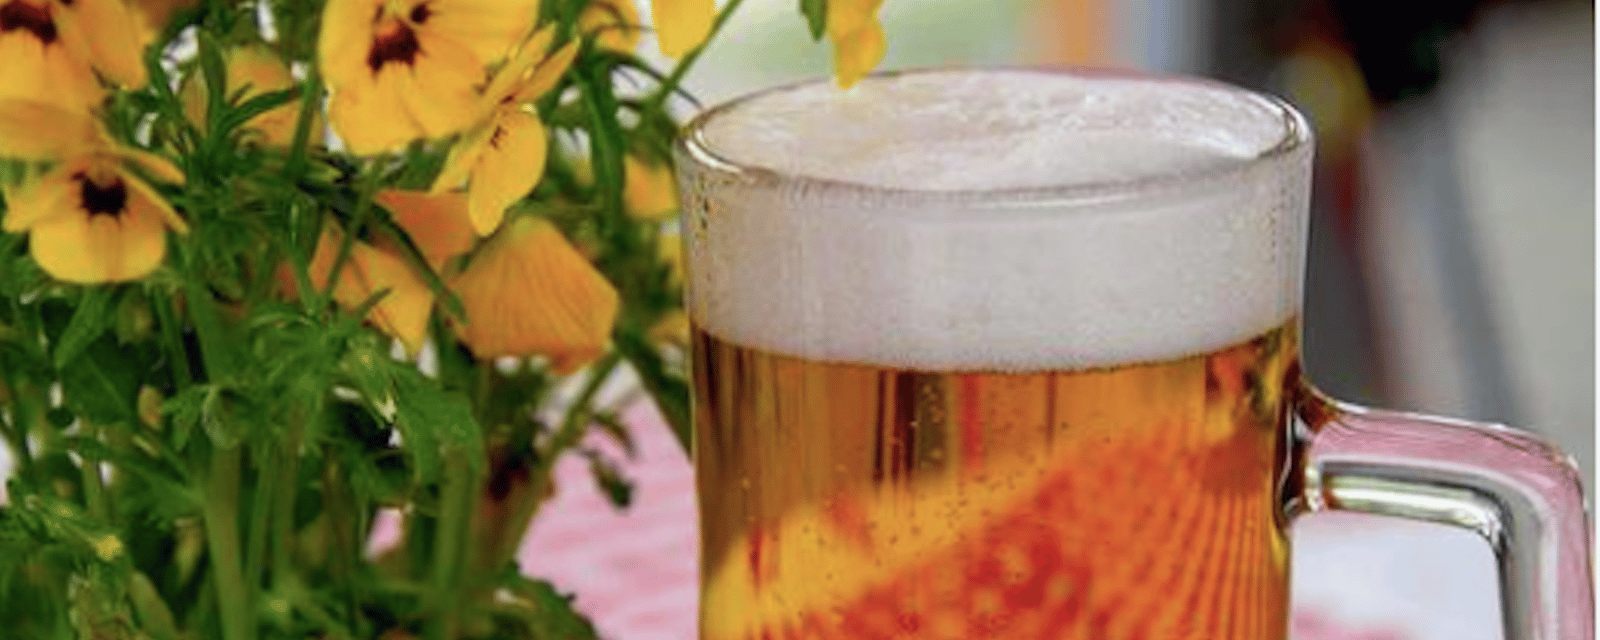 9 façons surprenantes d’utiliser de la bière périmée